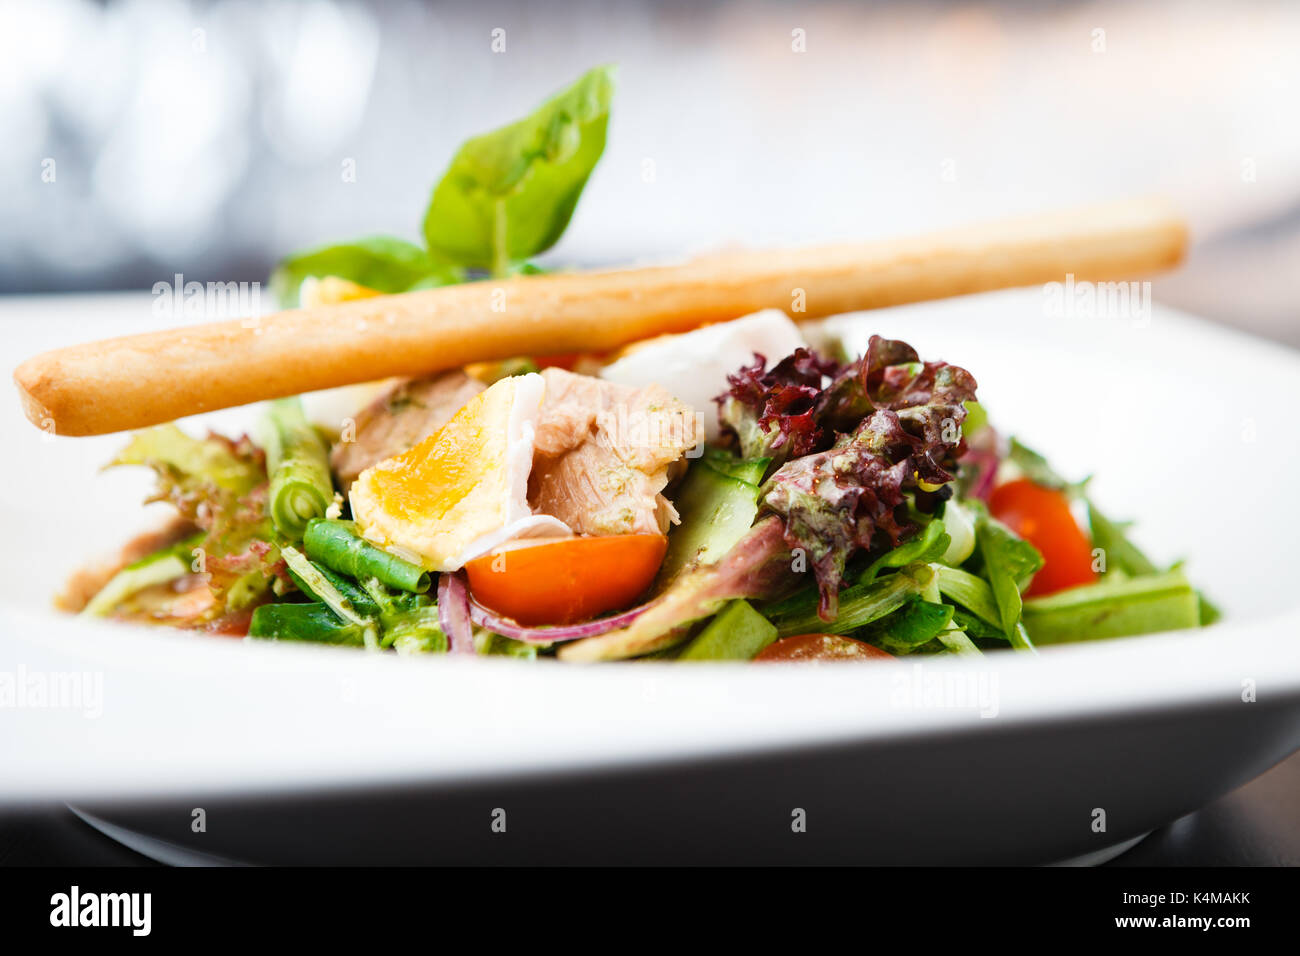 Salad nicoise with tuna Stock Photo